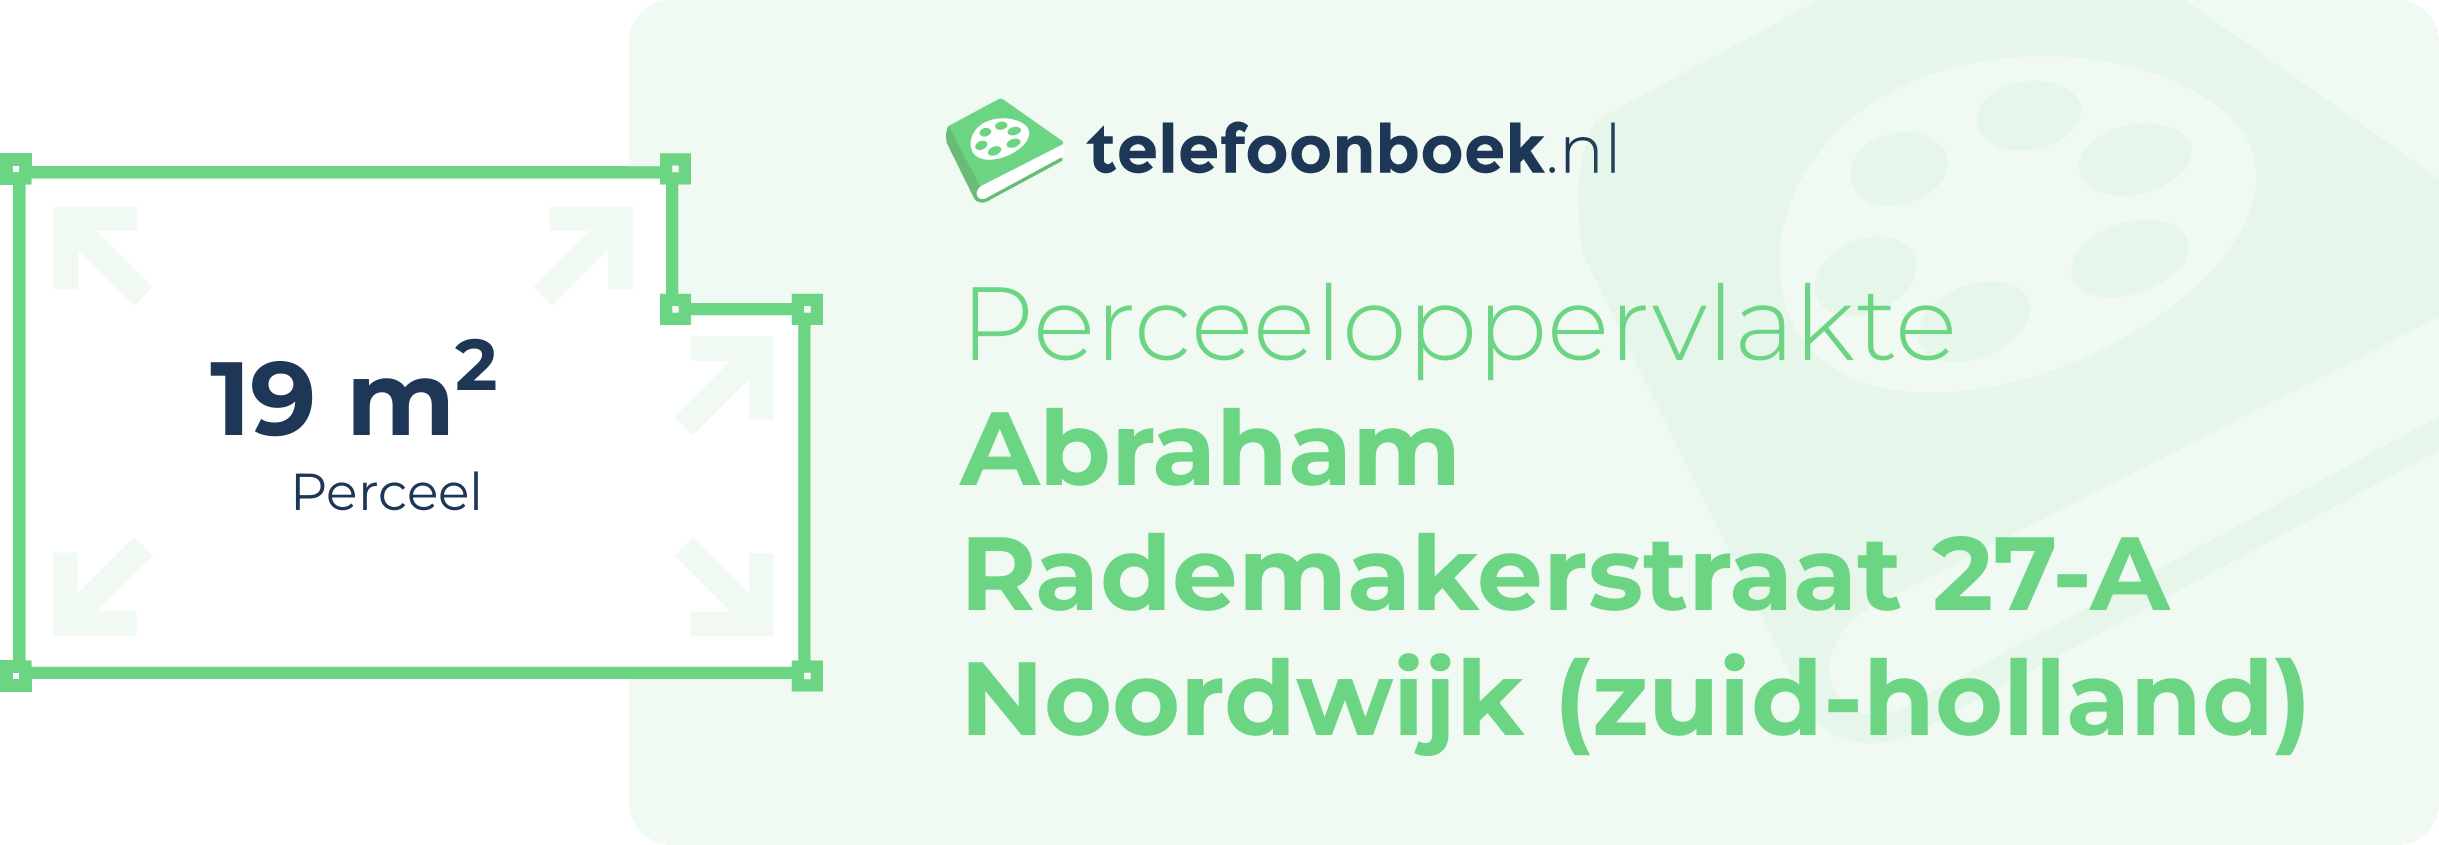 Perceeloppervlakte Abraham Rademakerstraat 27-A Noordwijk (Zuid-Holland)